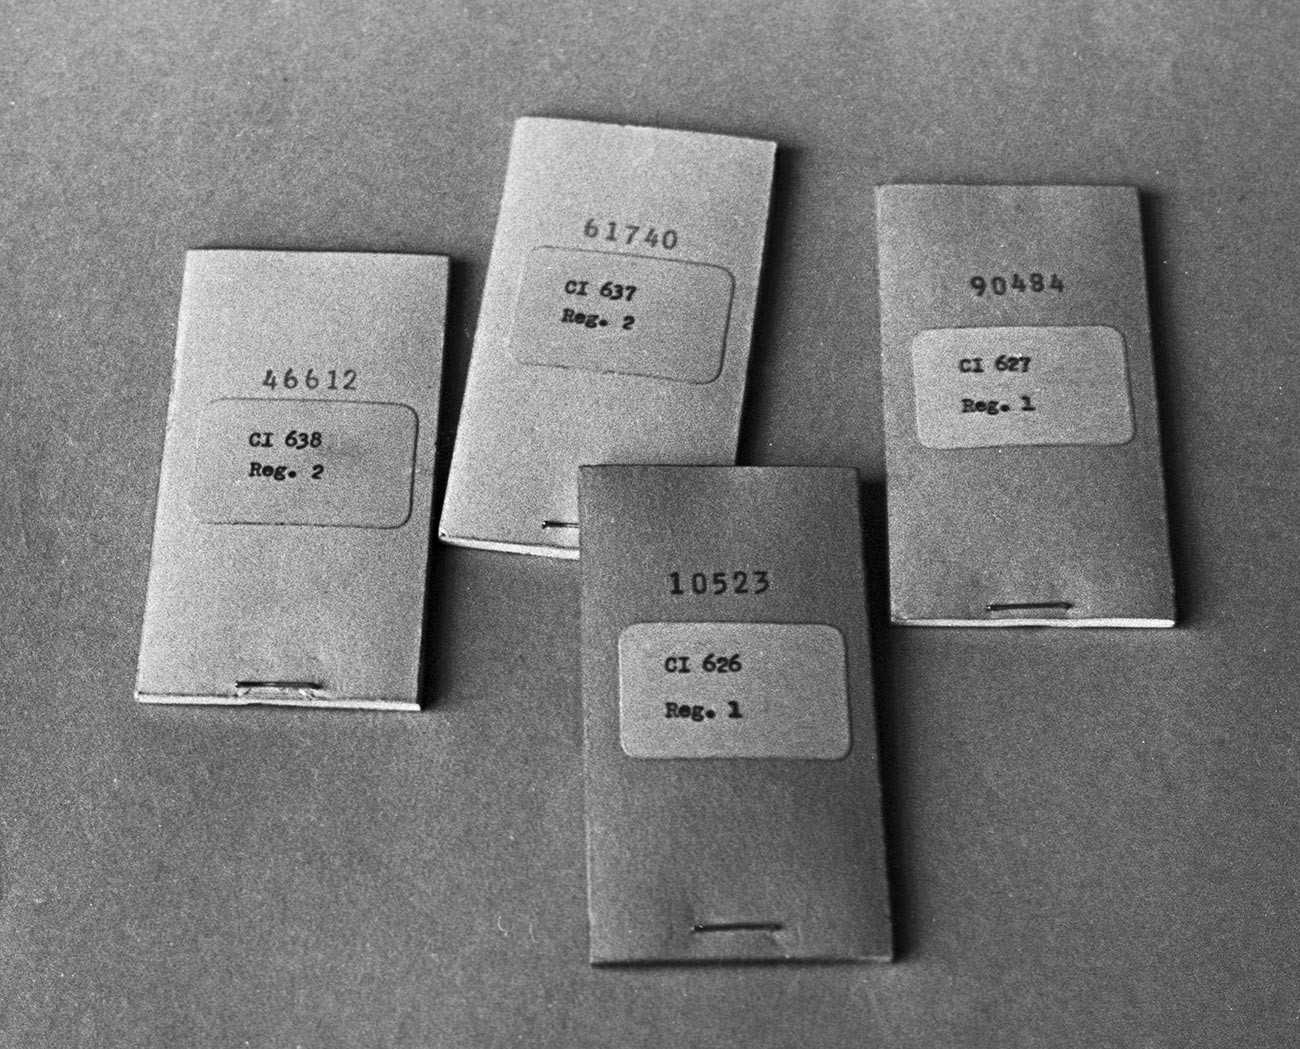 Quaderni di crittografia appartenuti al colonnello dell'intelligence militare sovietica Oleg Penkovskij, che lavorava per la Gran Bretagna e gli Stati Uniti